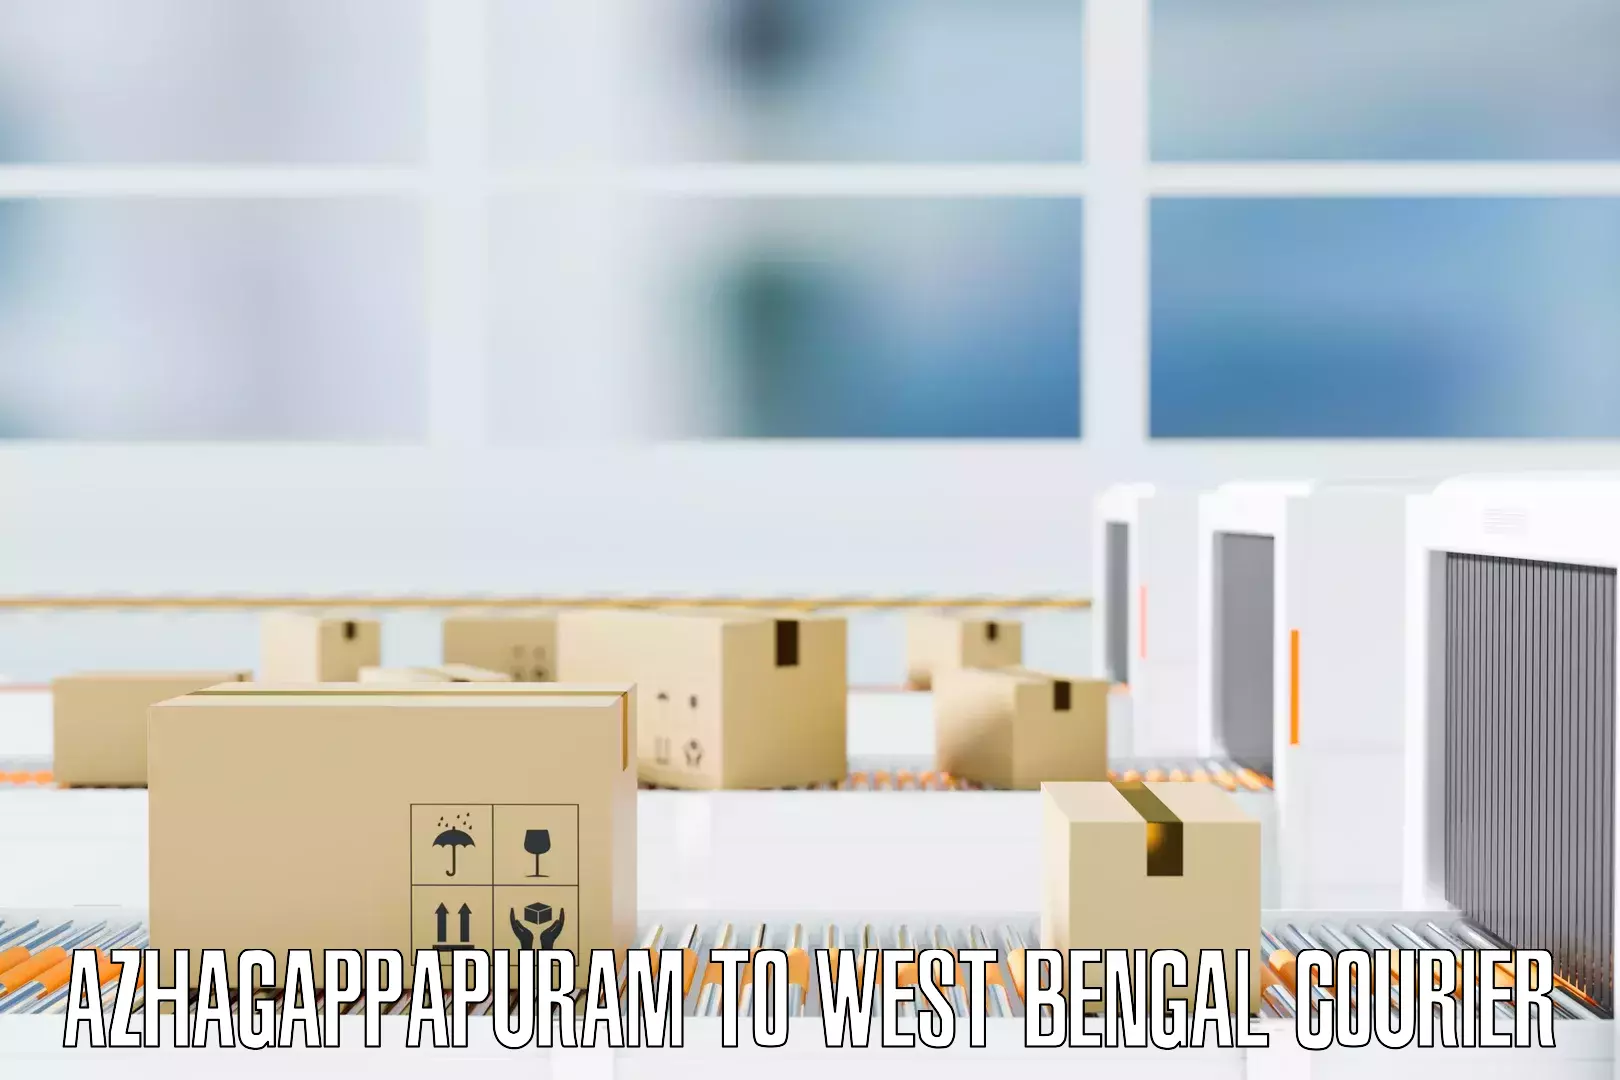 Comprehensive goods transport in Azhagappapuram to West Bengal